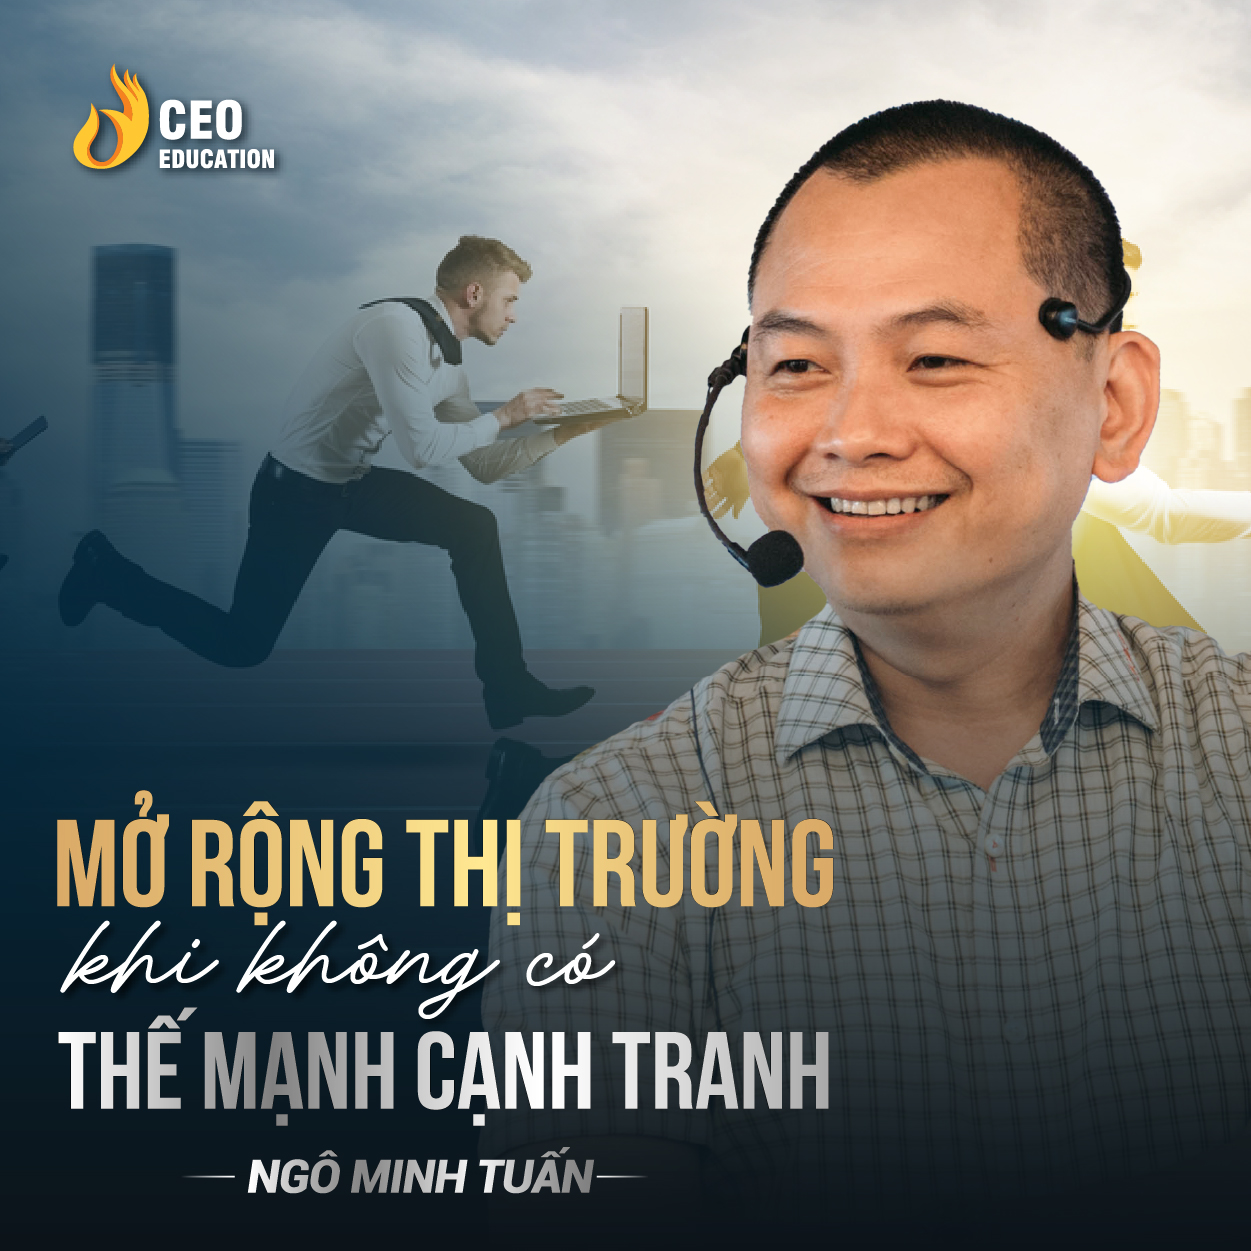 Mở rộng thị trường khi không có thể mạnh cạnh tranh | Ngô Minh Tuấn | Học Viện CEO Việt Nam